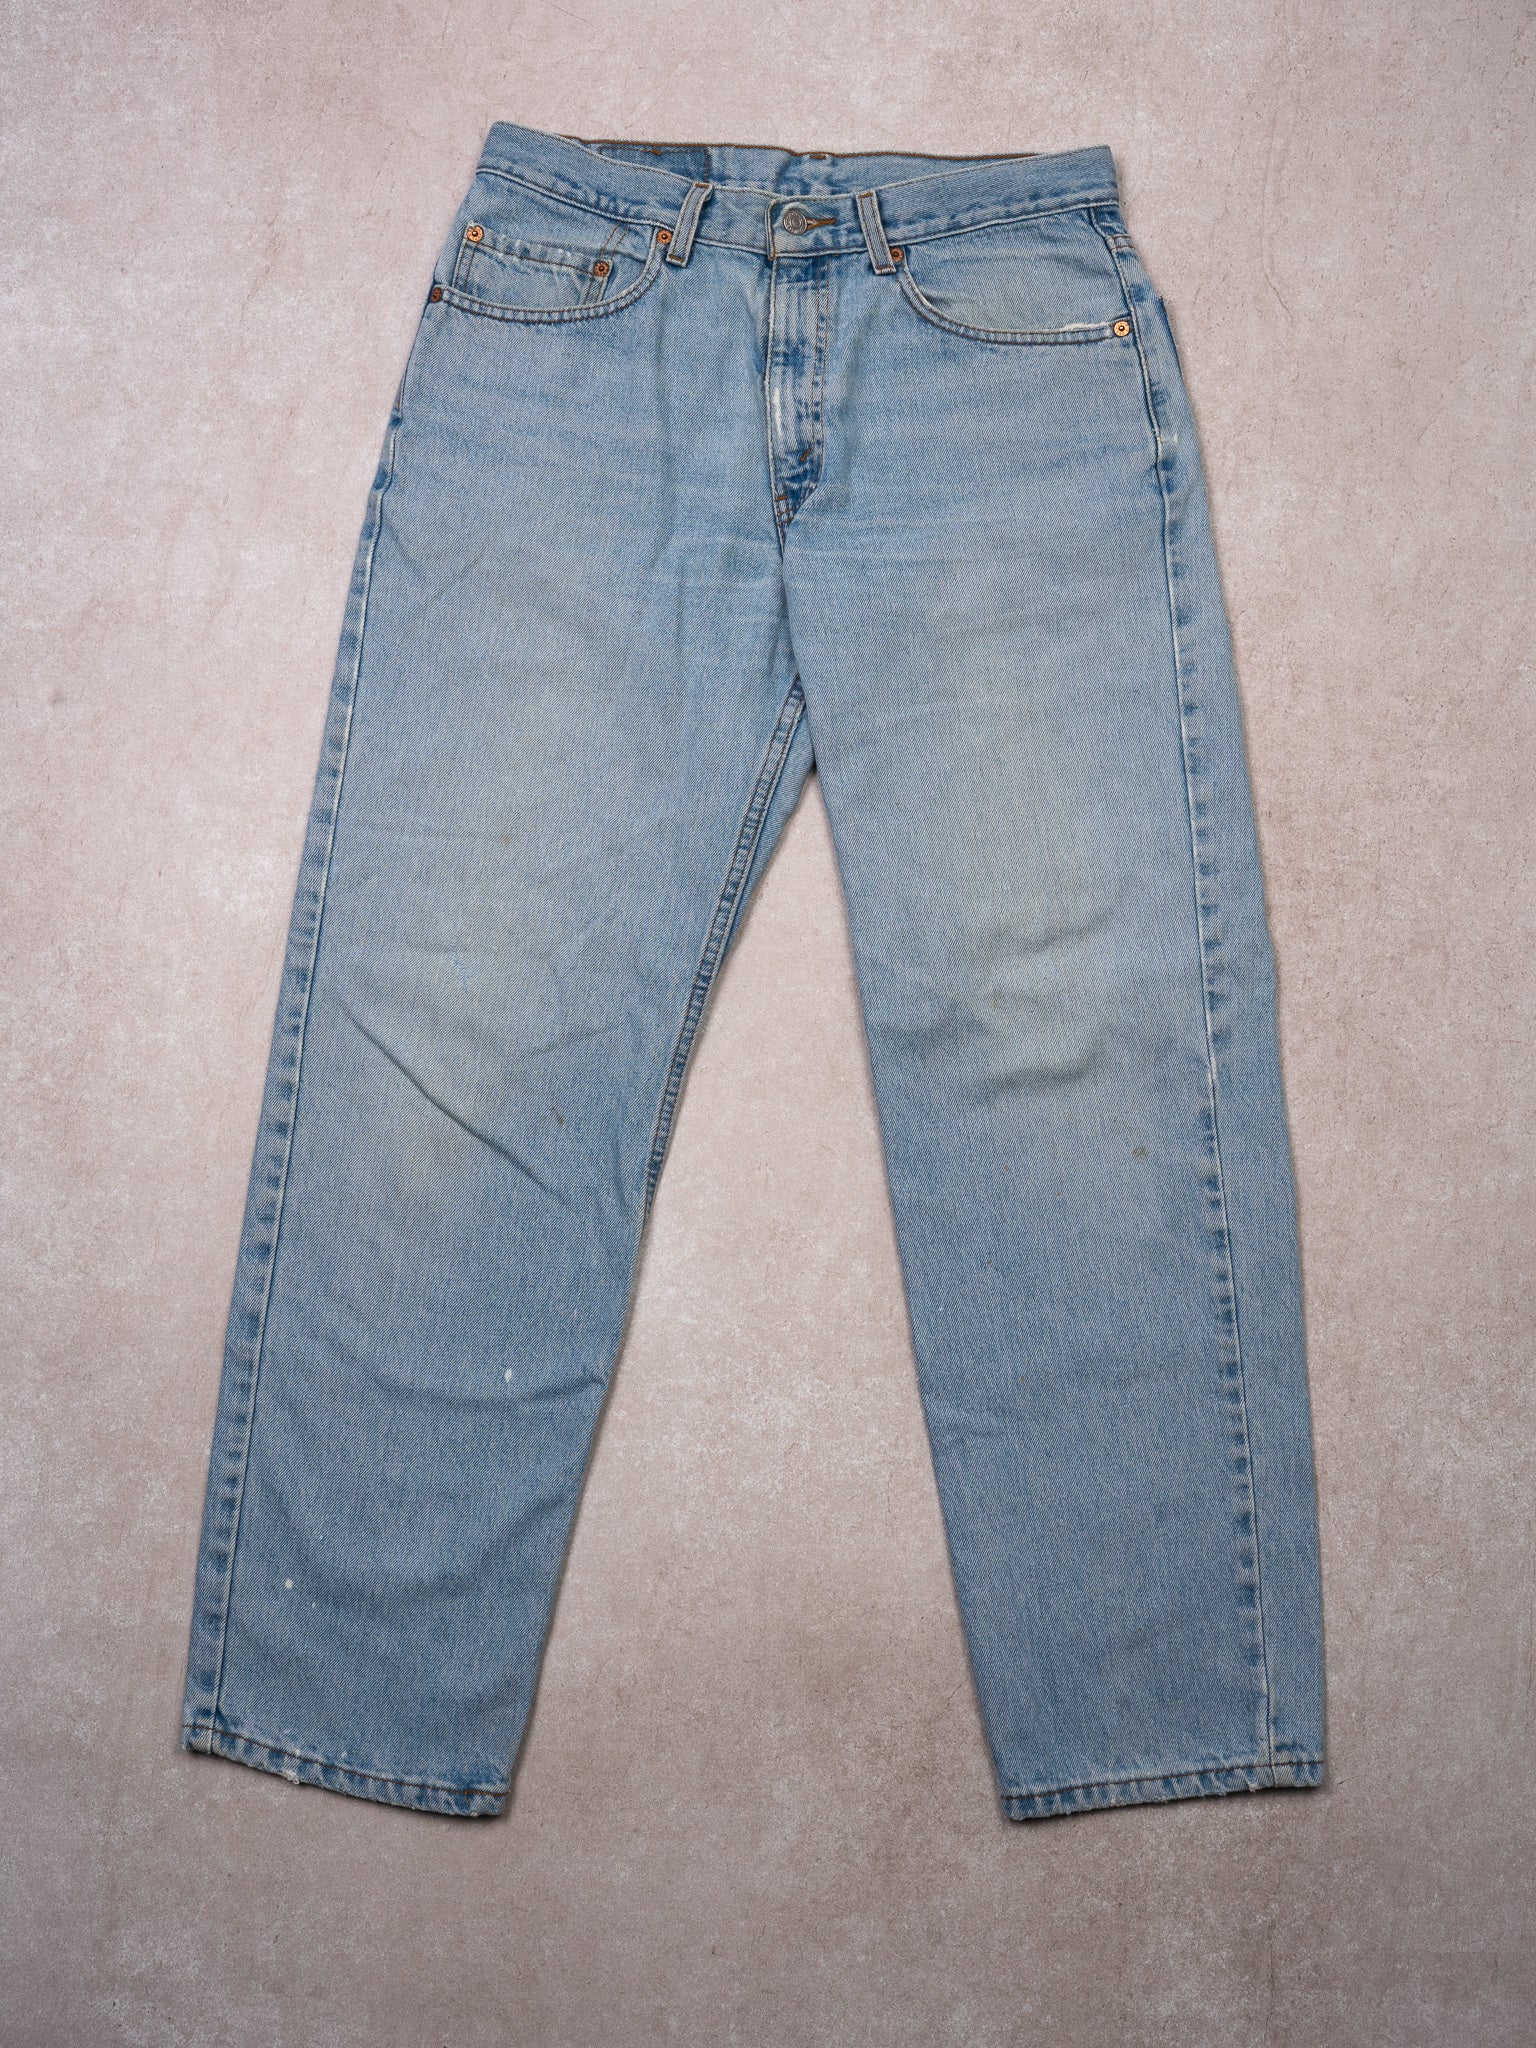 Vintage 90s Light Blue Relax Fit Levi 550 Jeans (32X30)